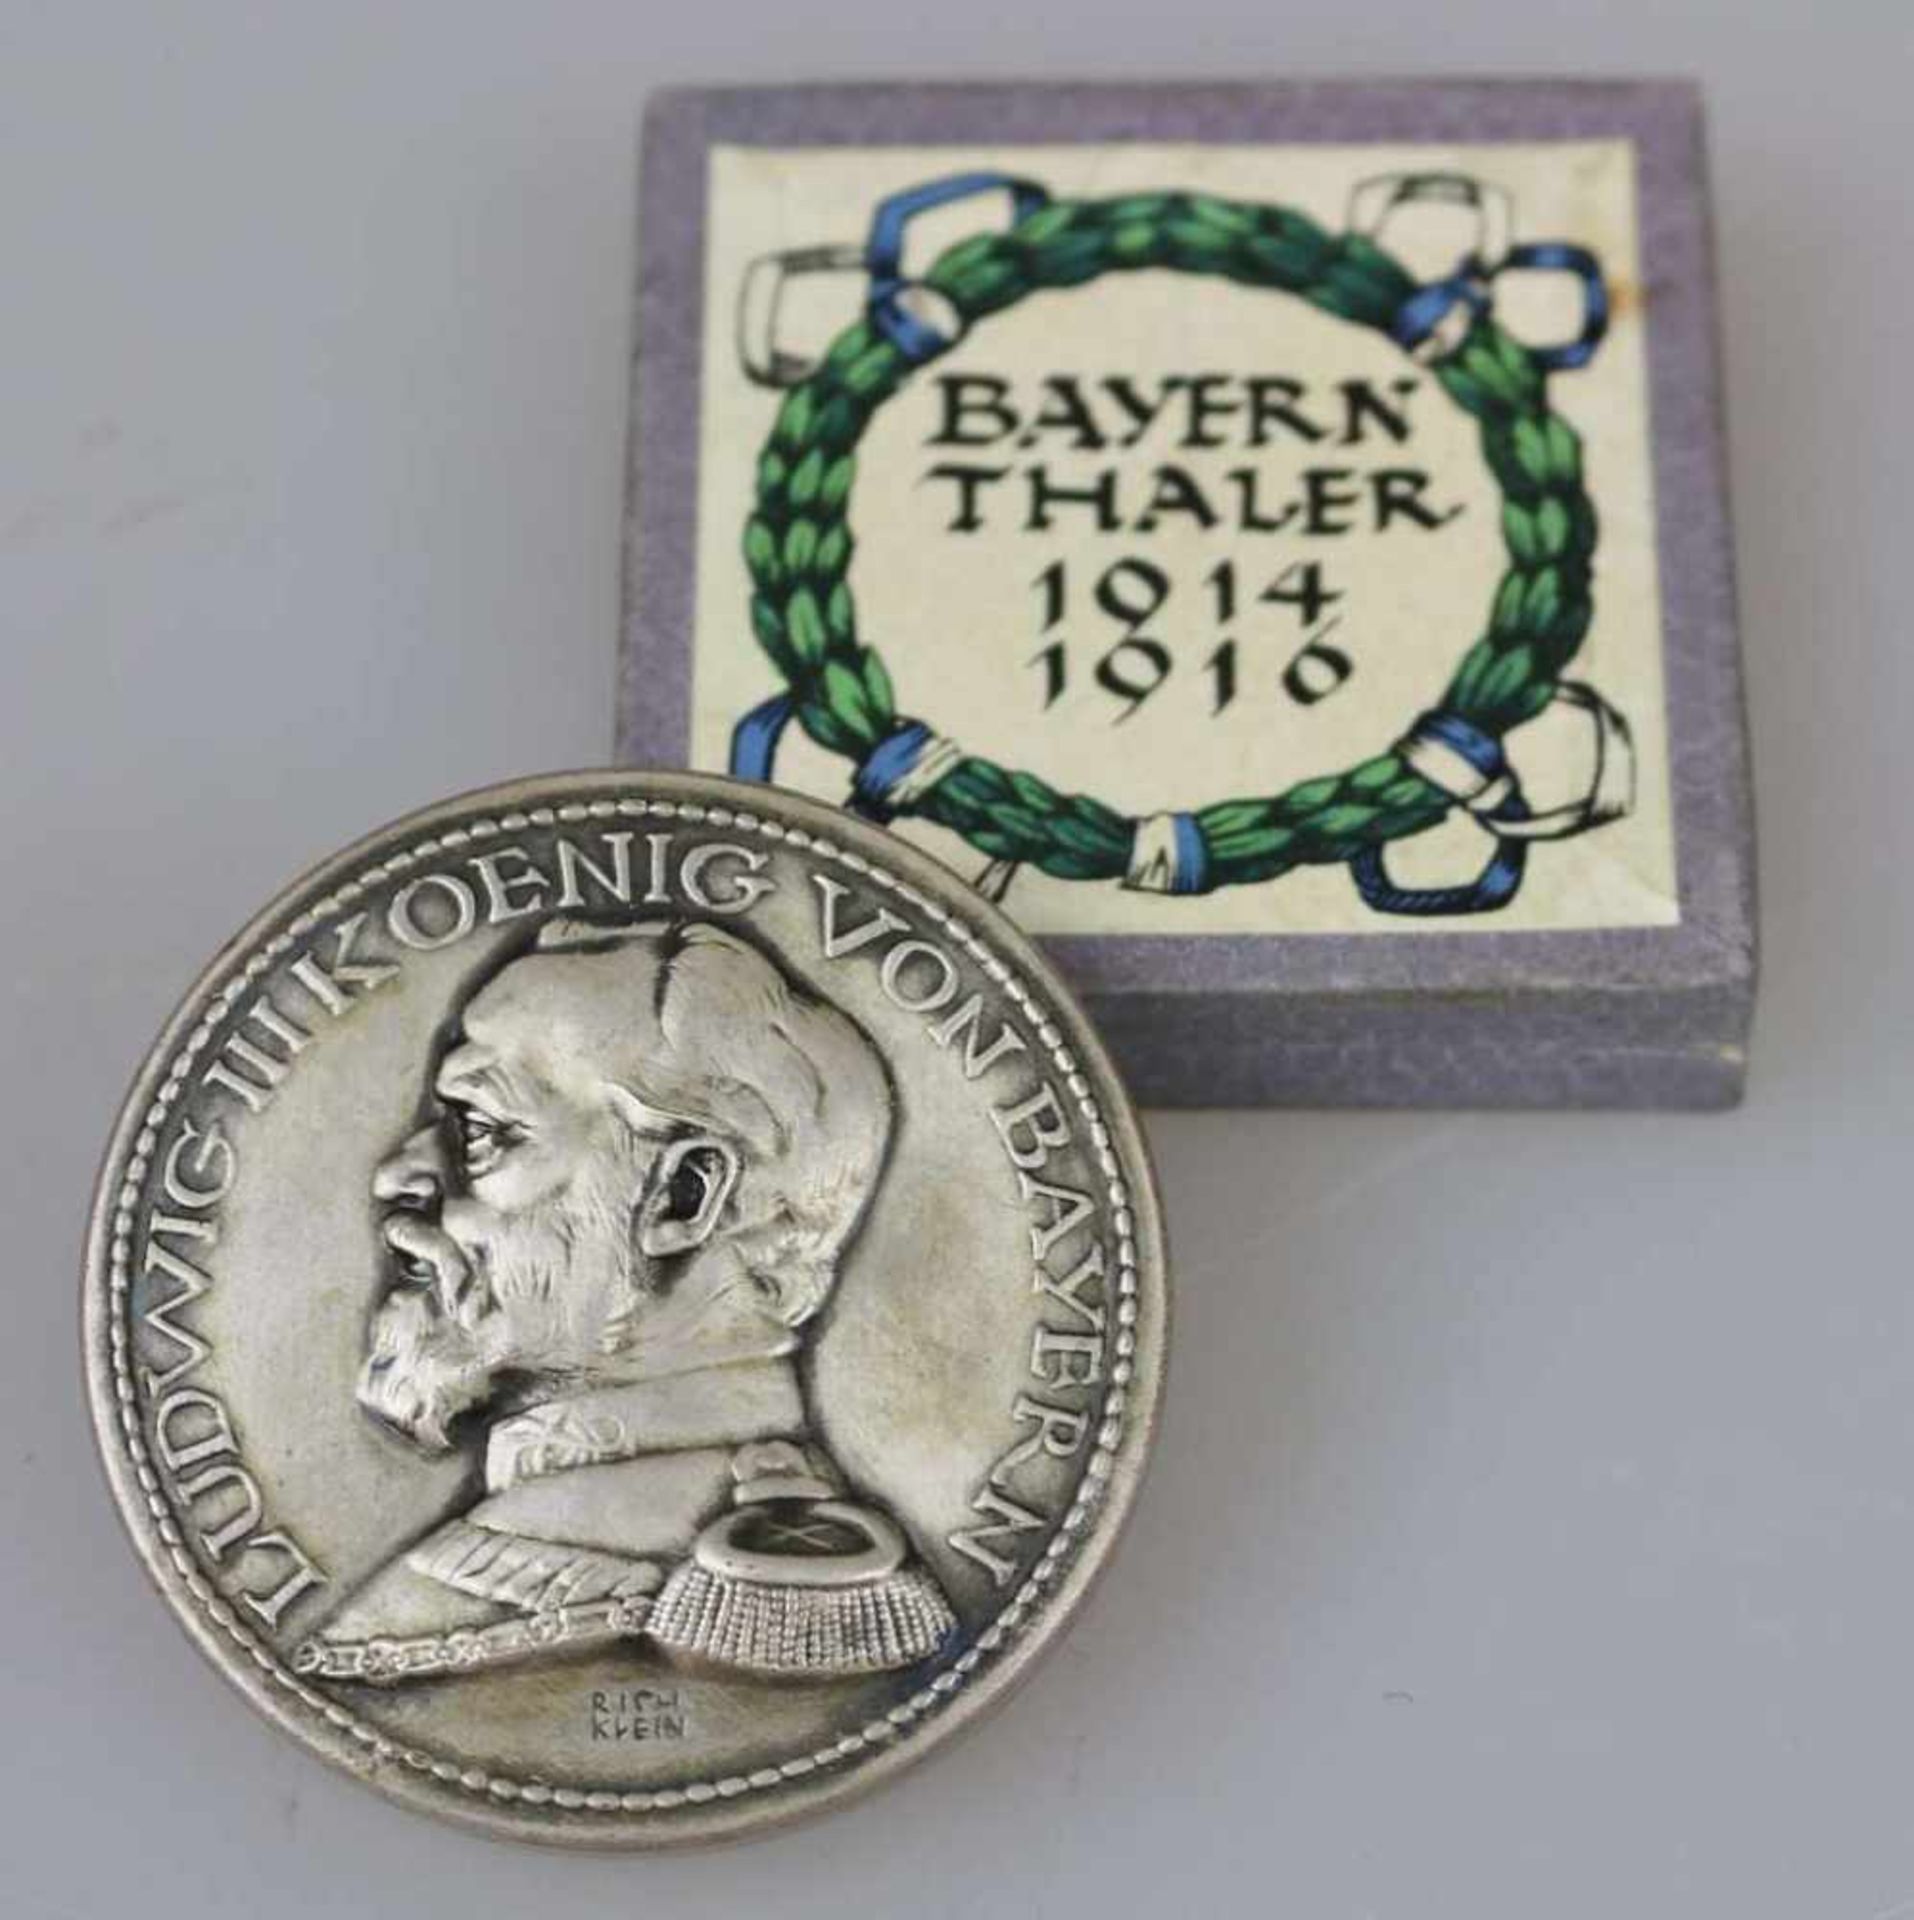 Bayernthaler 1914/1916 in der dazugehörigen Schachtel, Leporello intakt, guter Zustand.